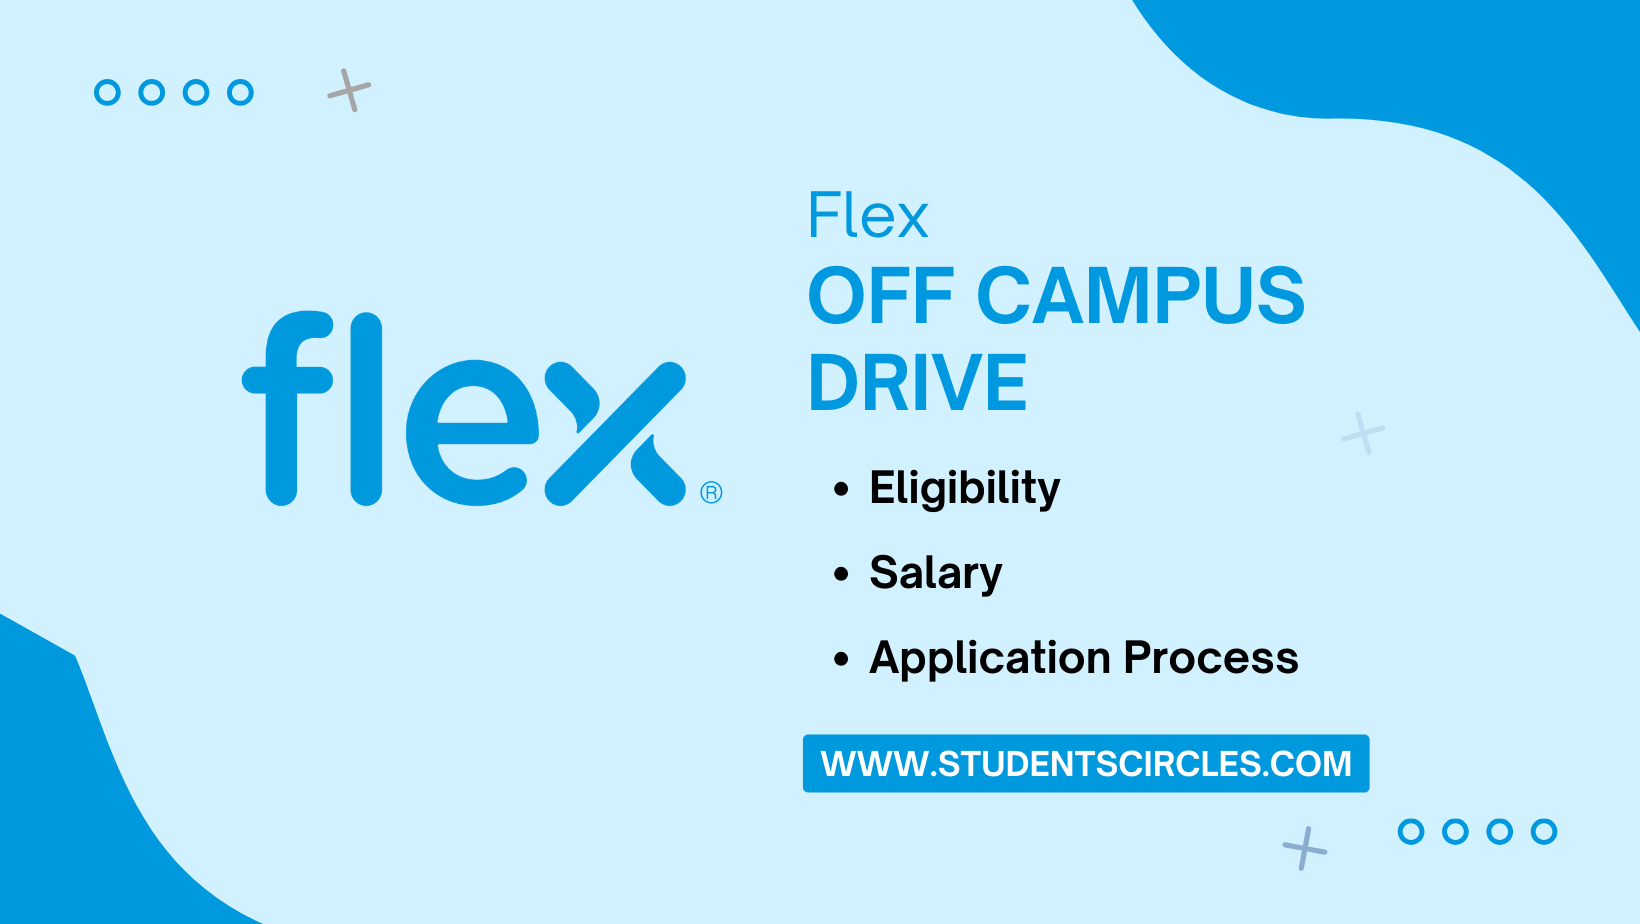 Flex Off Campus Drive